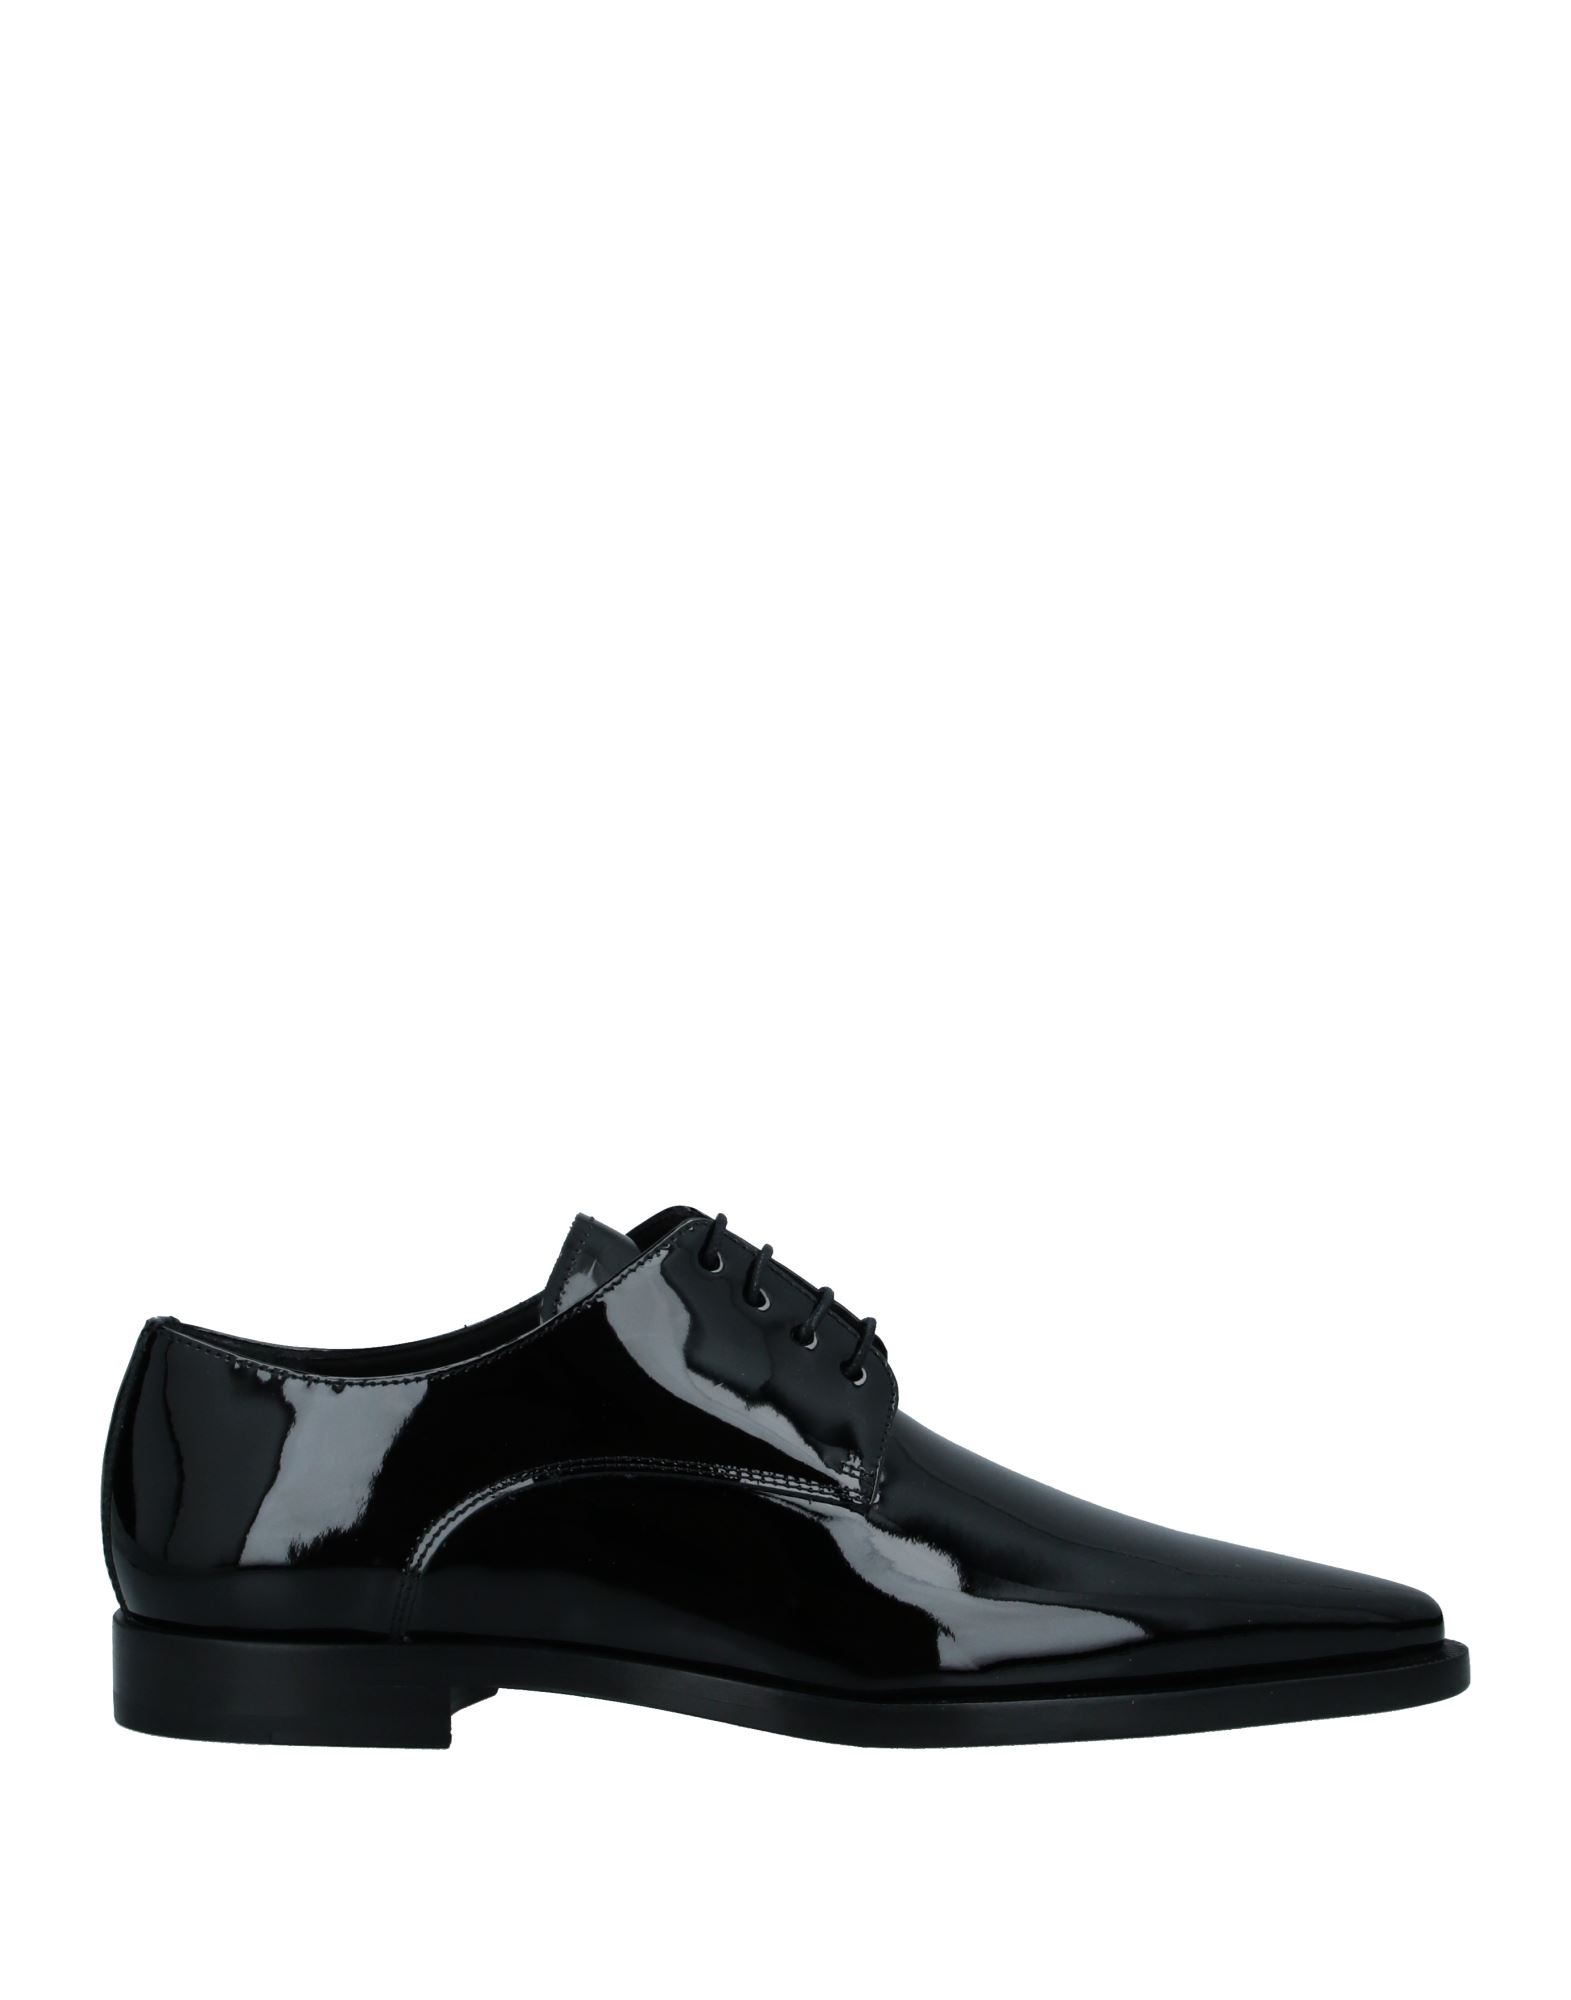 Shop Dsquared2 Man Lace-up Shoes Black Size 6 Soft Leather